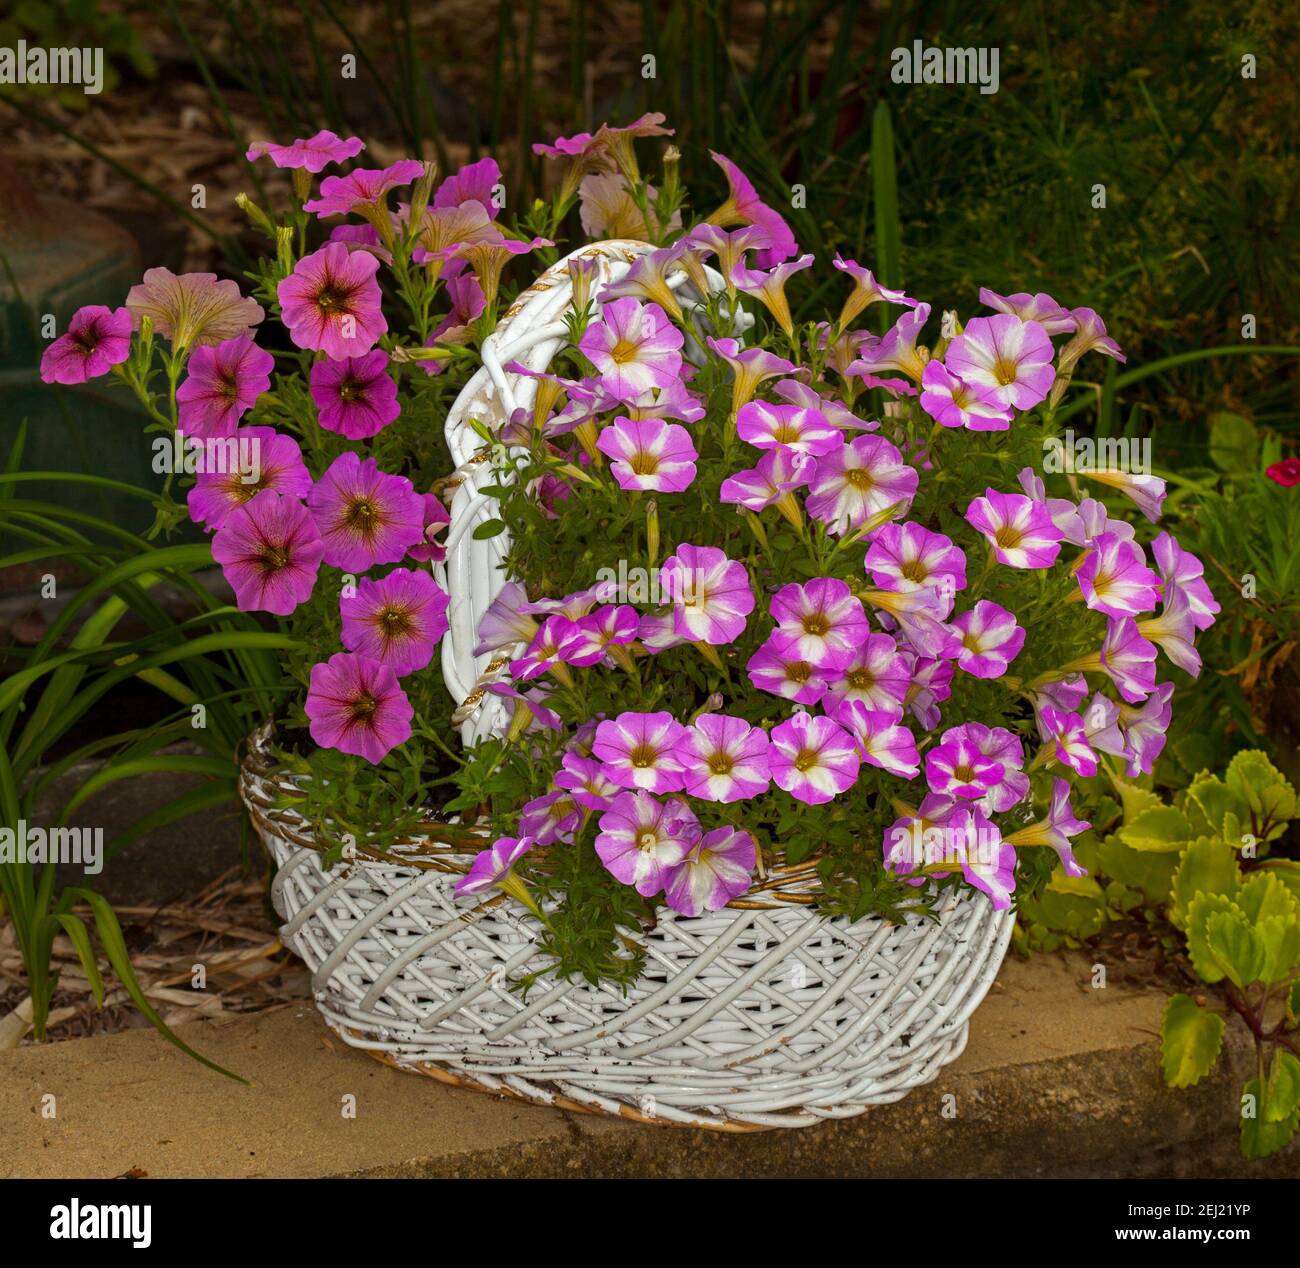 Contenedor de jardinería, masa de hermosas petunias de color rosa vivo y blanco floreciendo en un reciclado en gran cesta de mimbre blanco Foto de stock